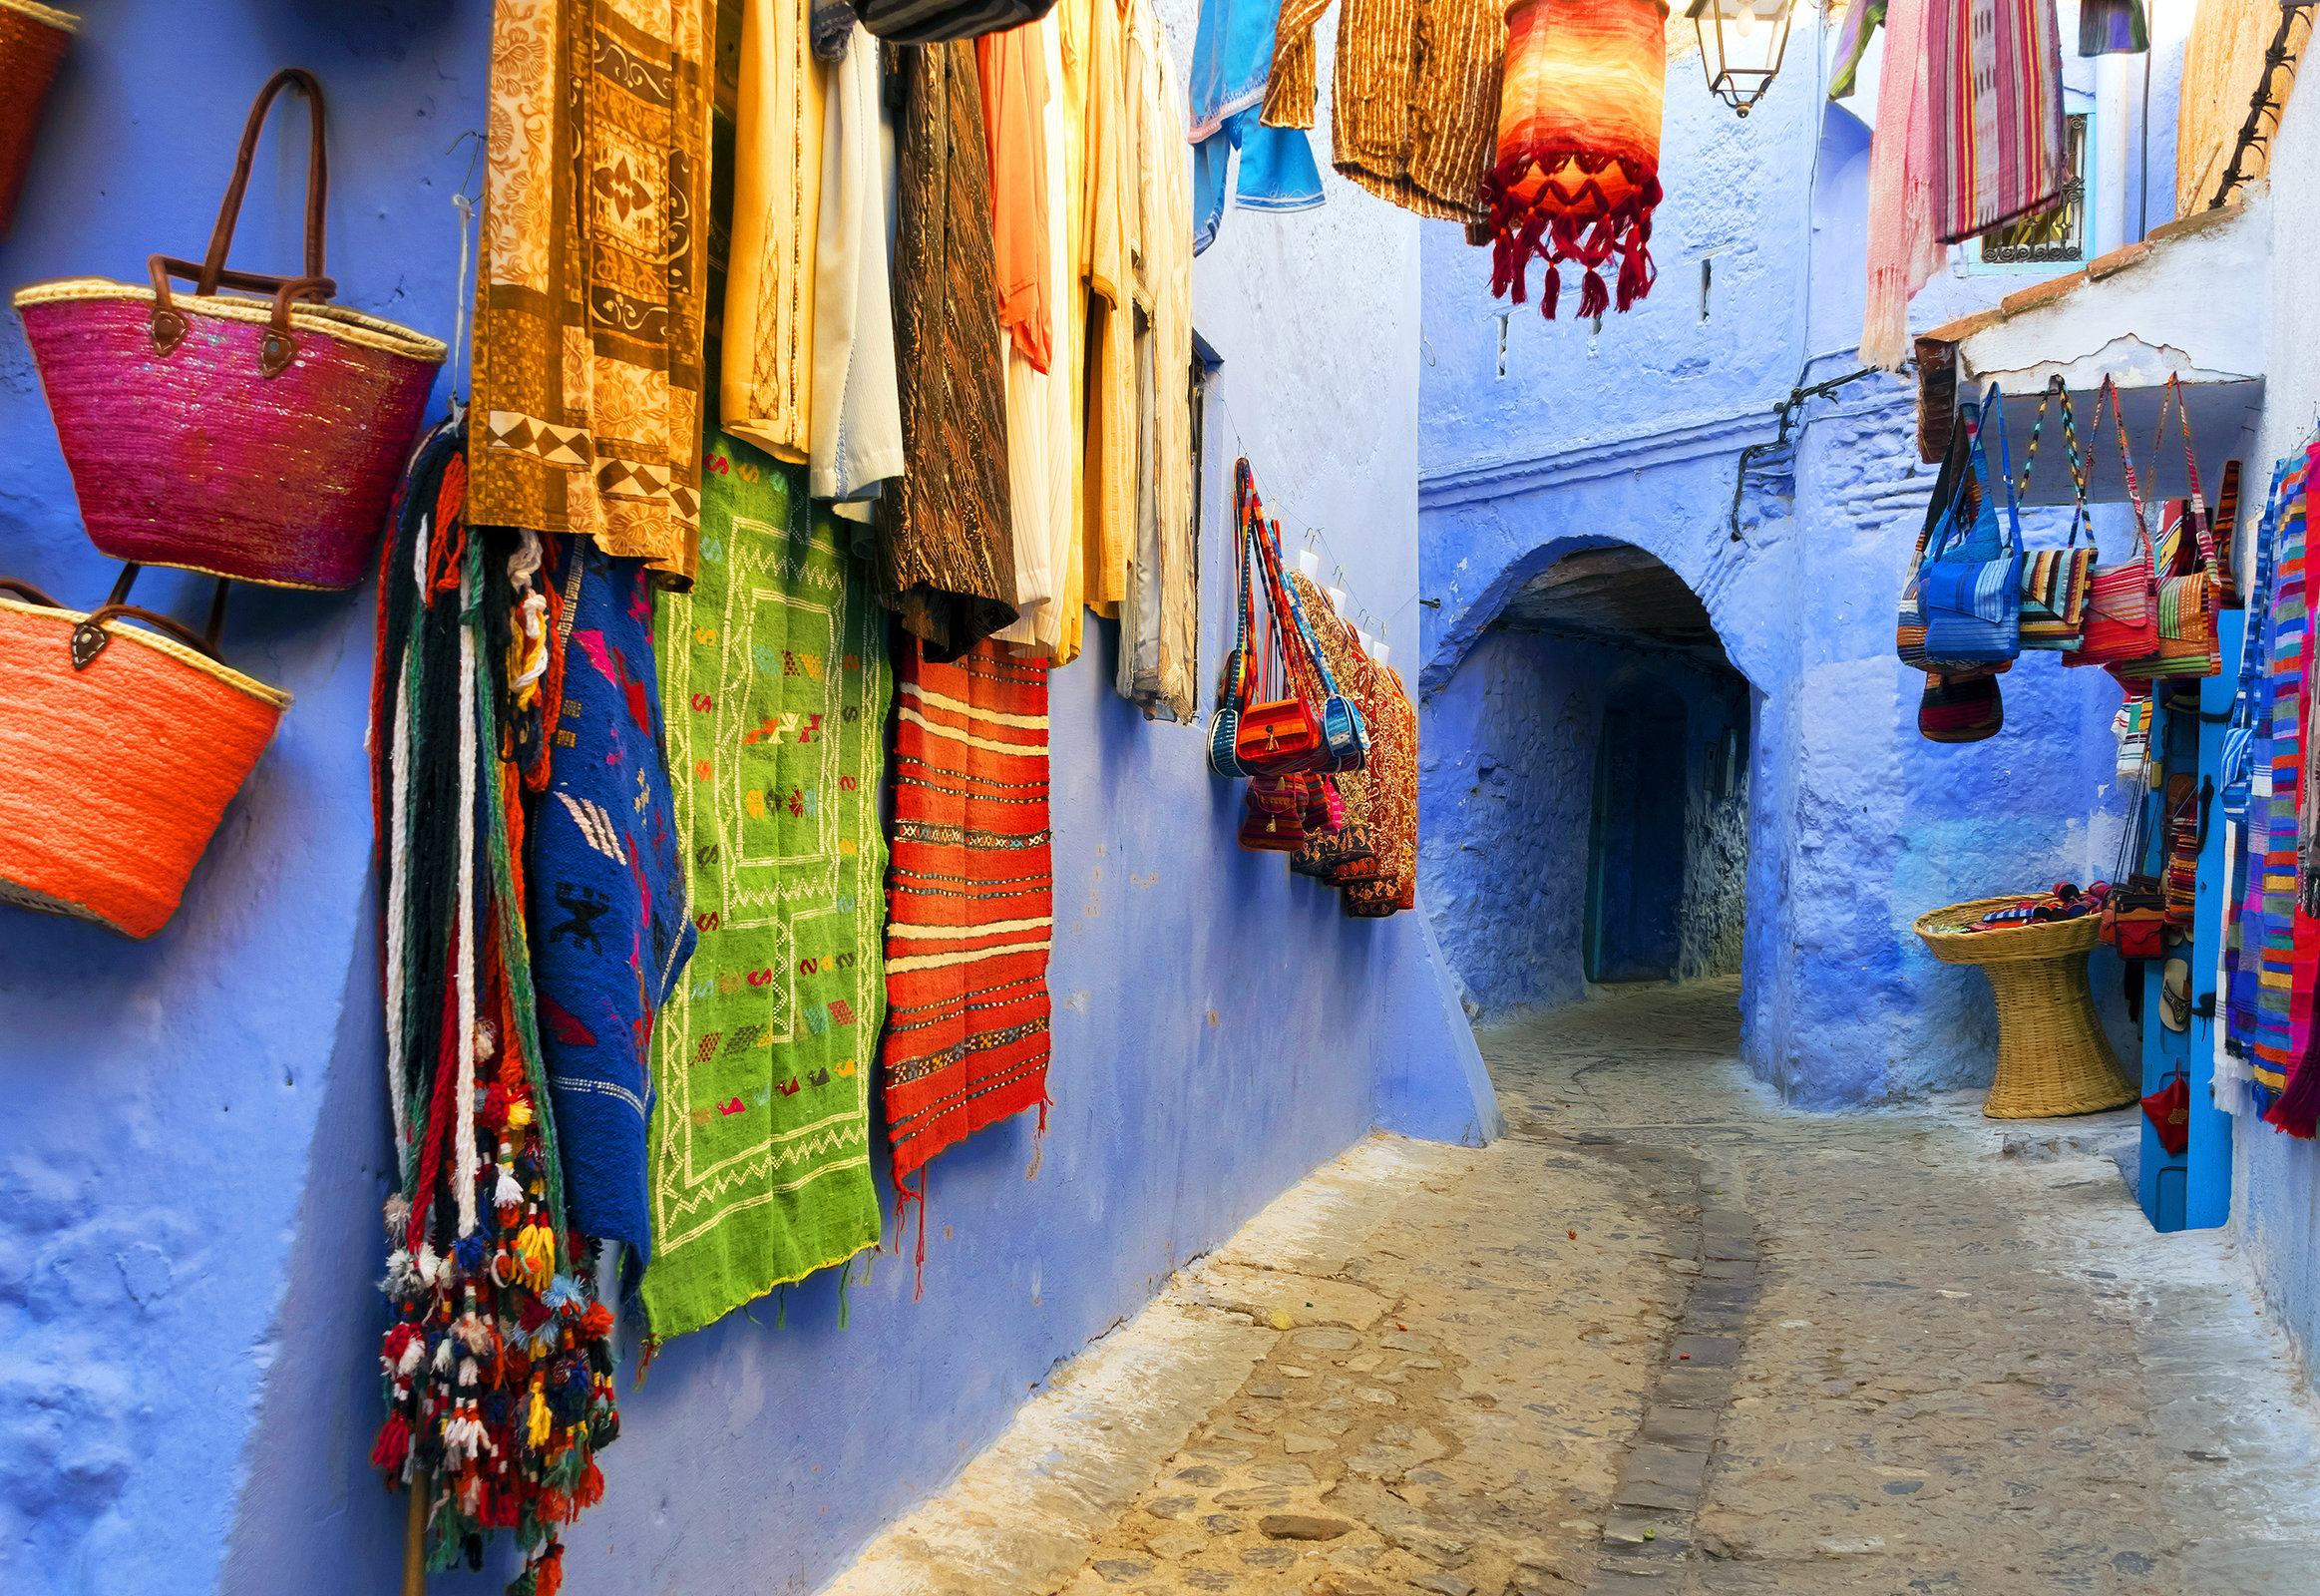 Morocco travel. Шефшауэн Марокко. Голубой город шавен, Марокко. Агадир Марокко шавен. Шефшауэн Марокко достопримечательности.